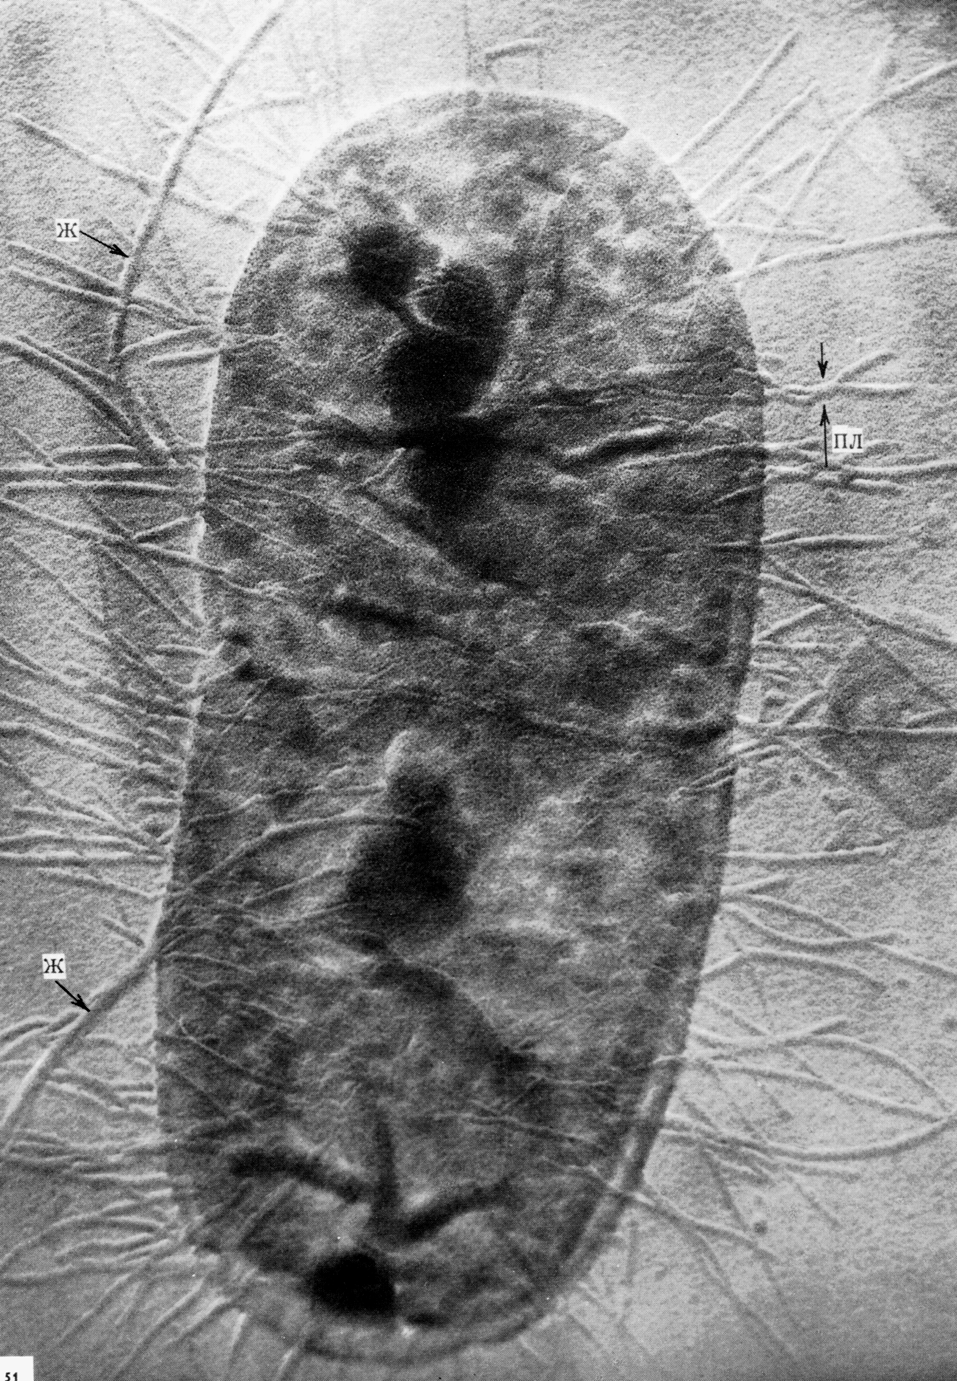 Рис. 3. Электронограмма E. coli. По периферии бактериальной клетки видны жгутики (ж) и пили (пл)